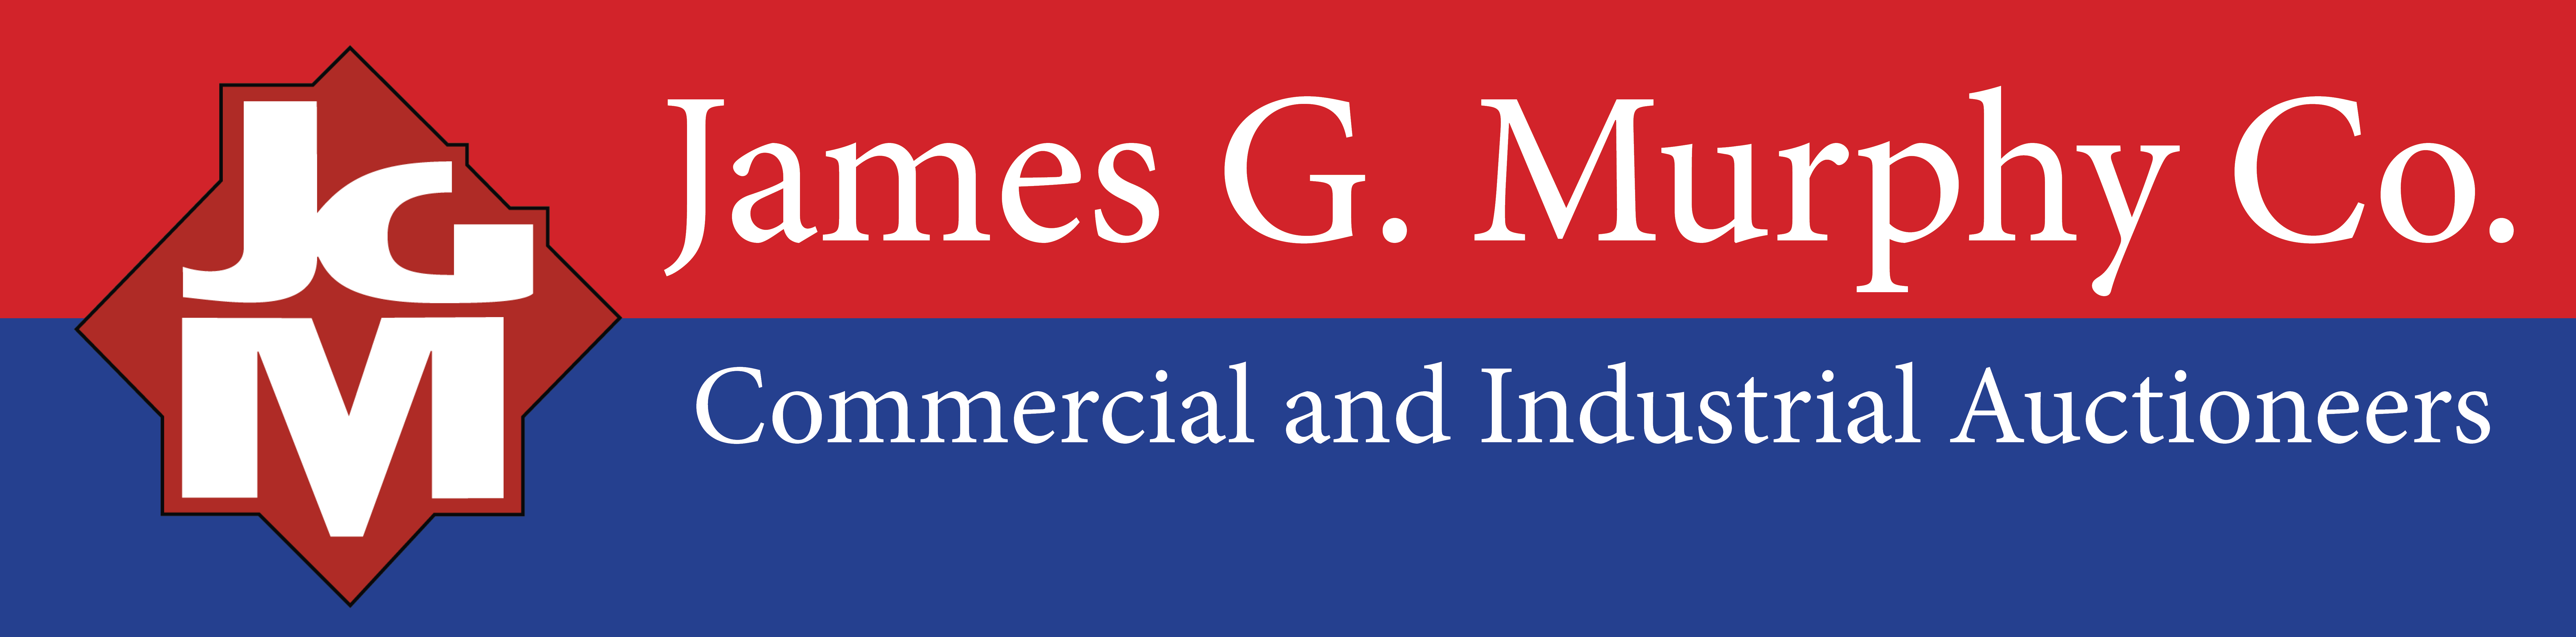 James G. Murphy Co.